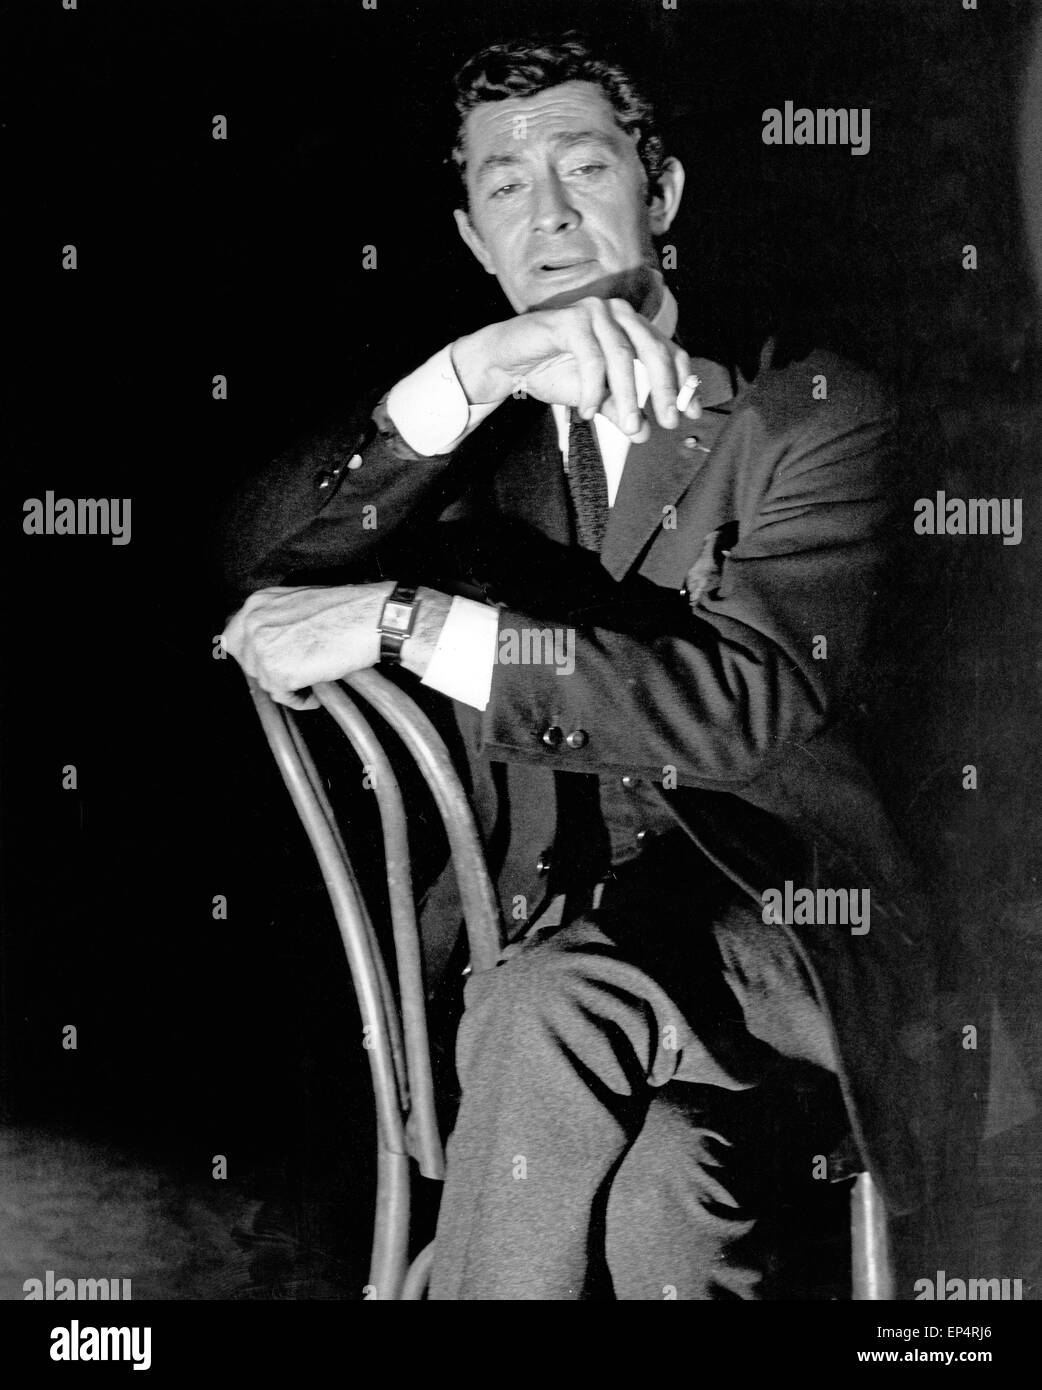 Jean Claude Pascal, französischer Schauspieler und Sänger, in Deutschland  1970. French actor and singer Jean Claude Pascal, Germany 1970 Stock Photo  - Alamy